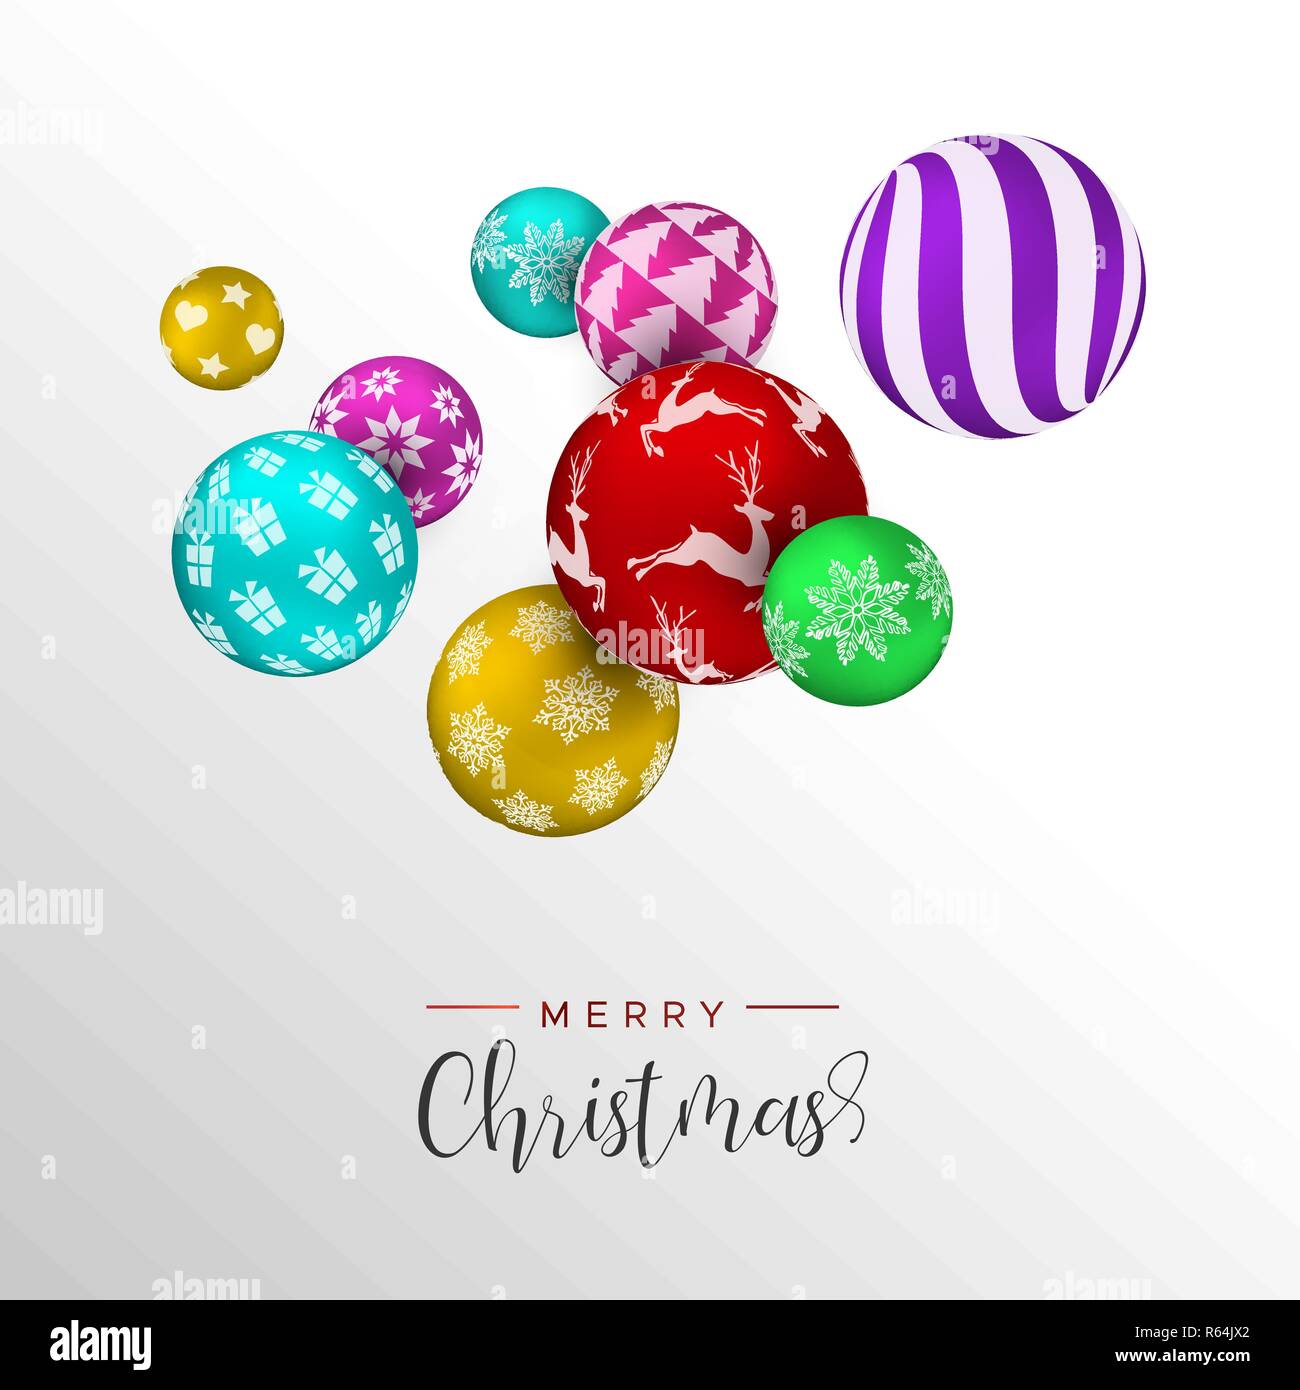 Weihnachtskarte, bunte Xmas bauble Ornamente. Mehrfarbige urlaub Kugeln Hintergrund für die Einladung oder Jahreszeiten Gruß. Stock Vektor